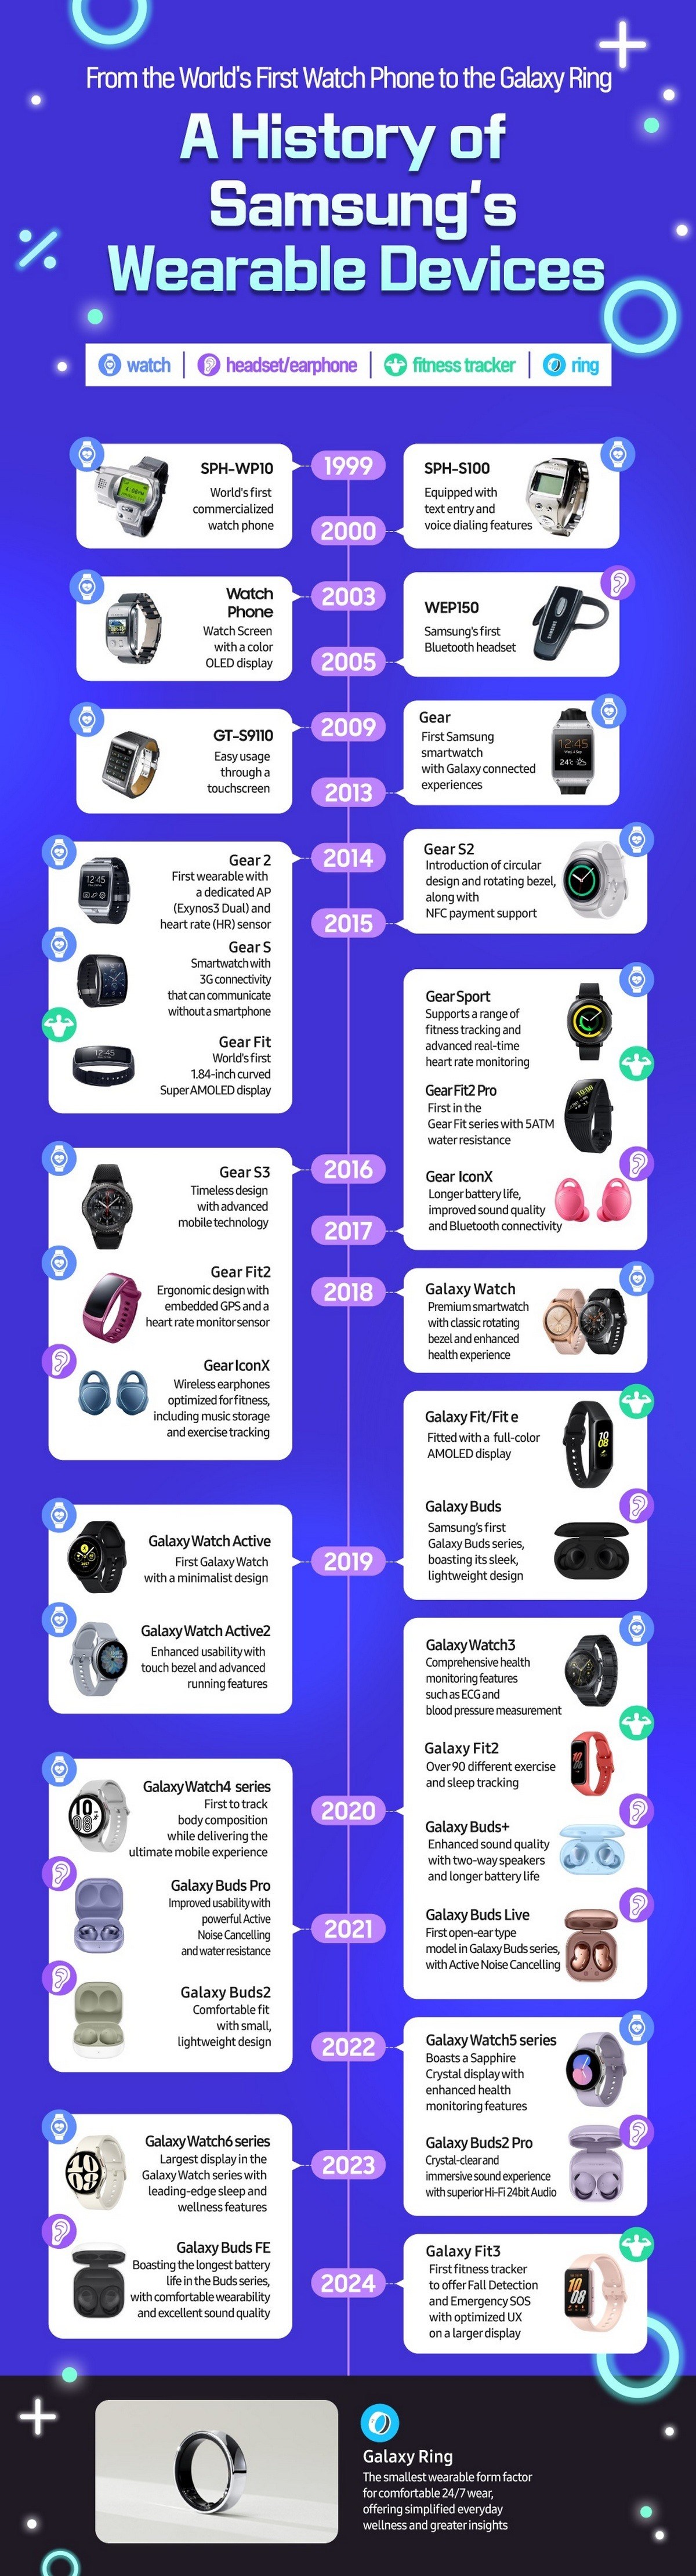 Samsung’un 25 yıllık giyilebilir cihaz macerası